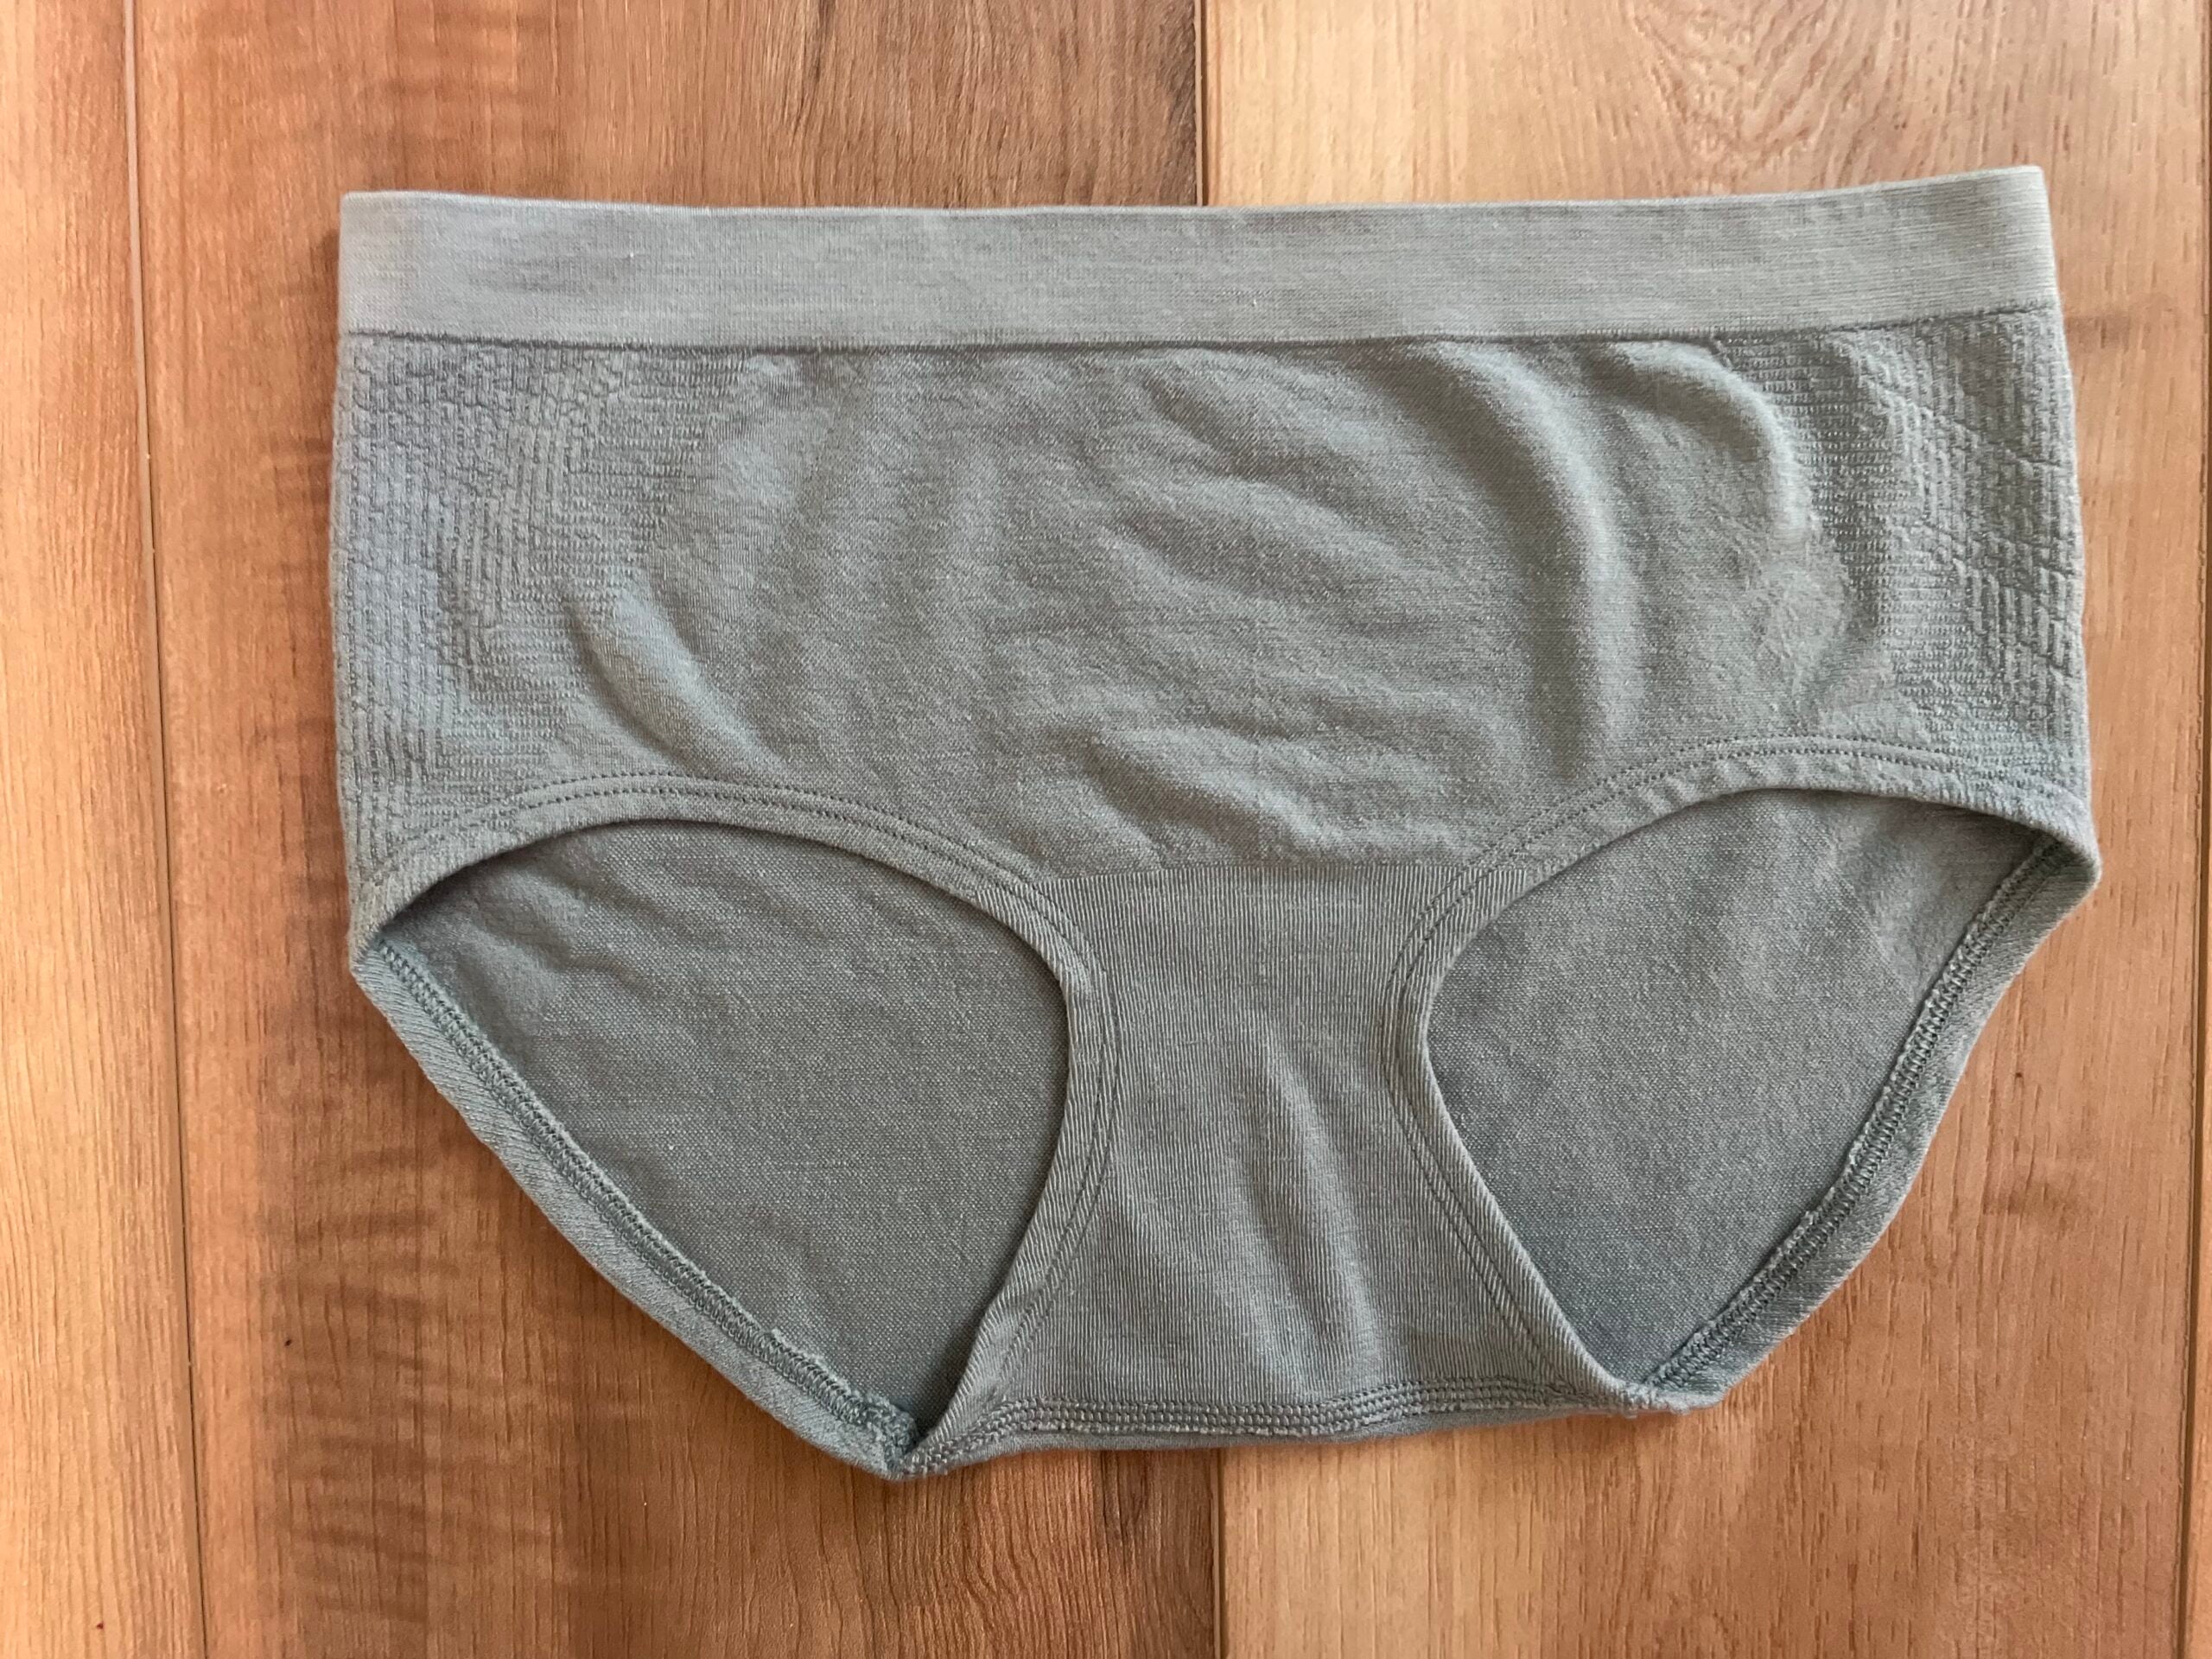 Women's Armachillo Cooling Underwear